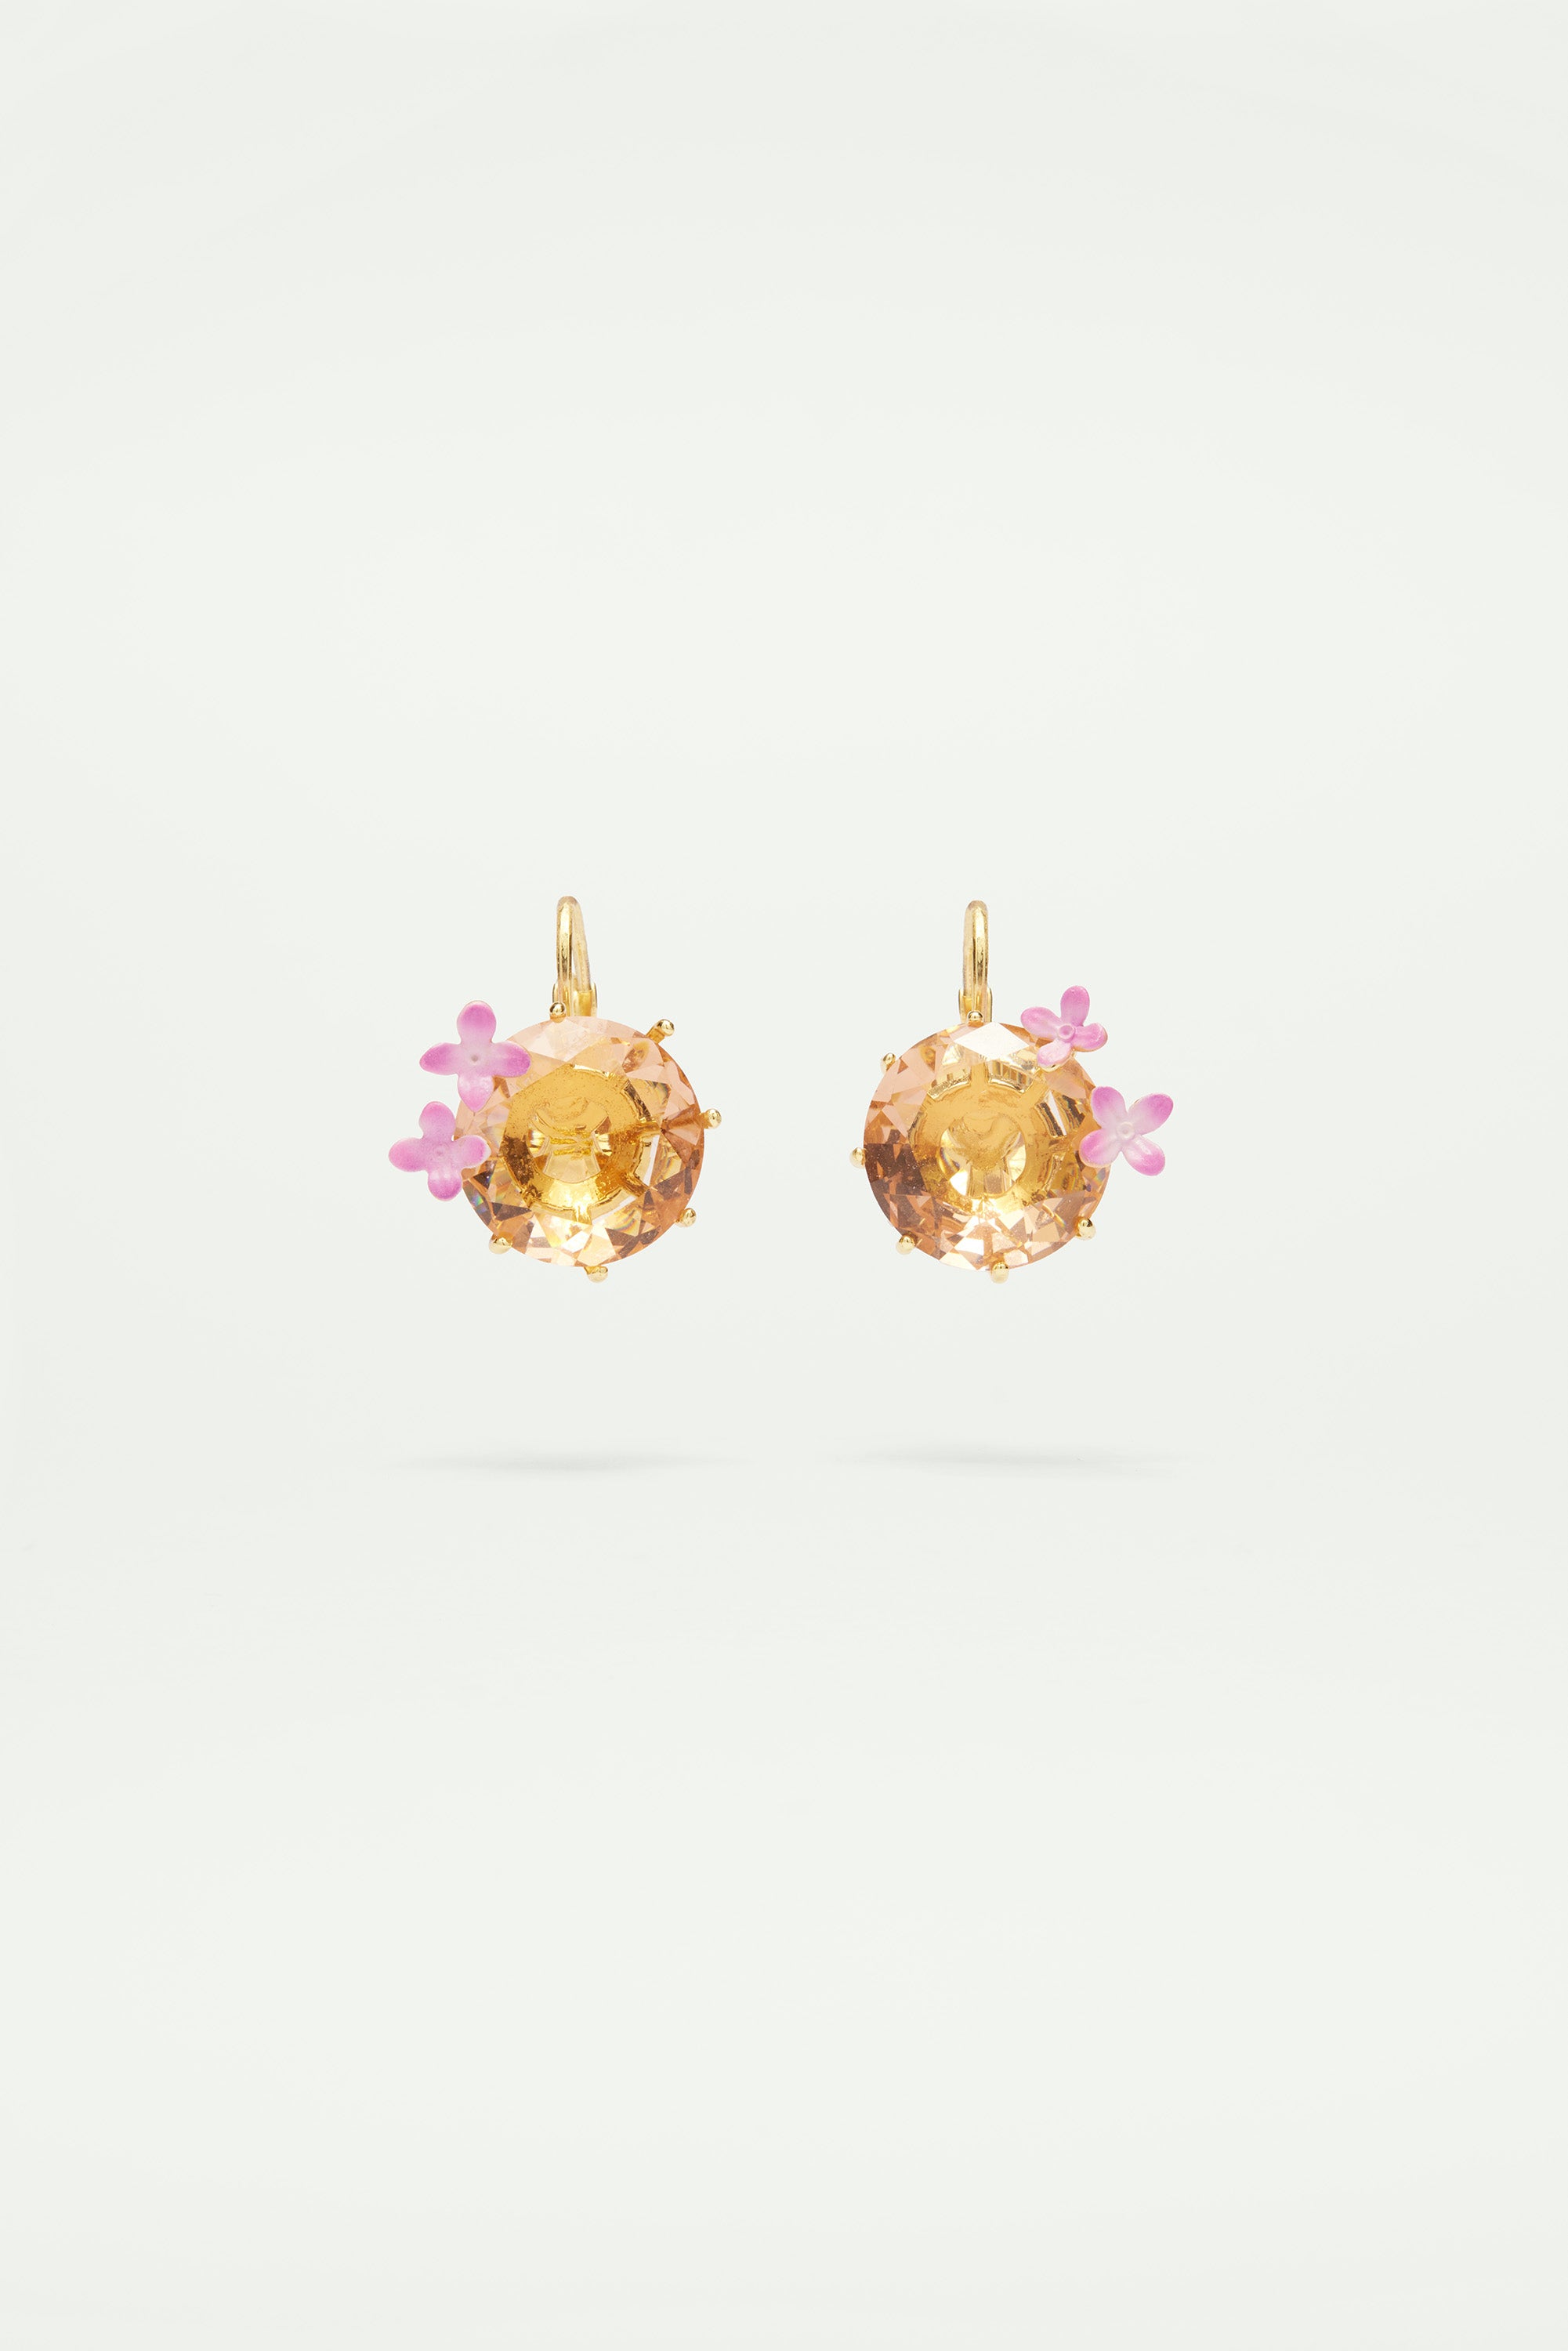 Boucles d'oreilles dormeuses fleurs et pierre ronde la diamantine rose abricot